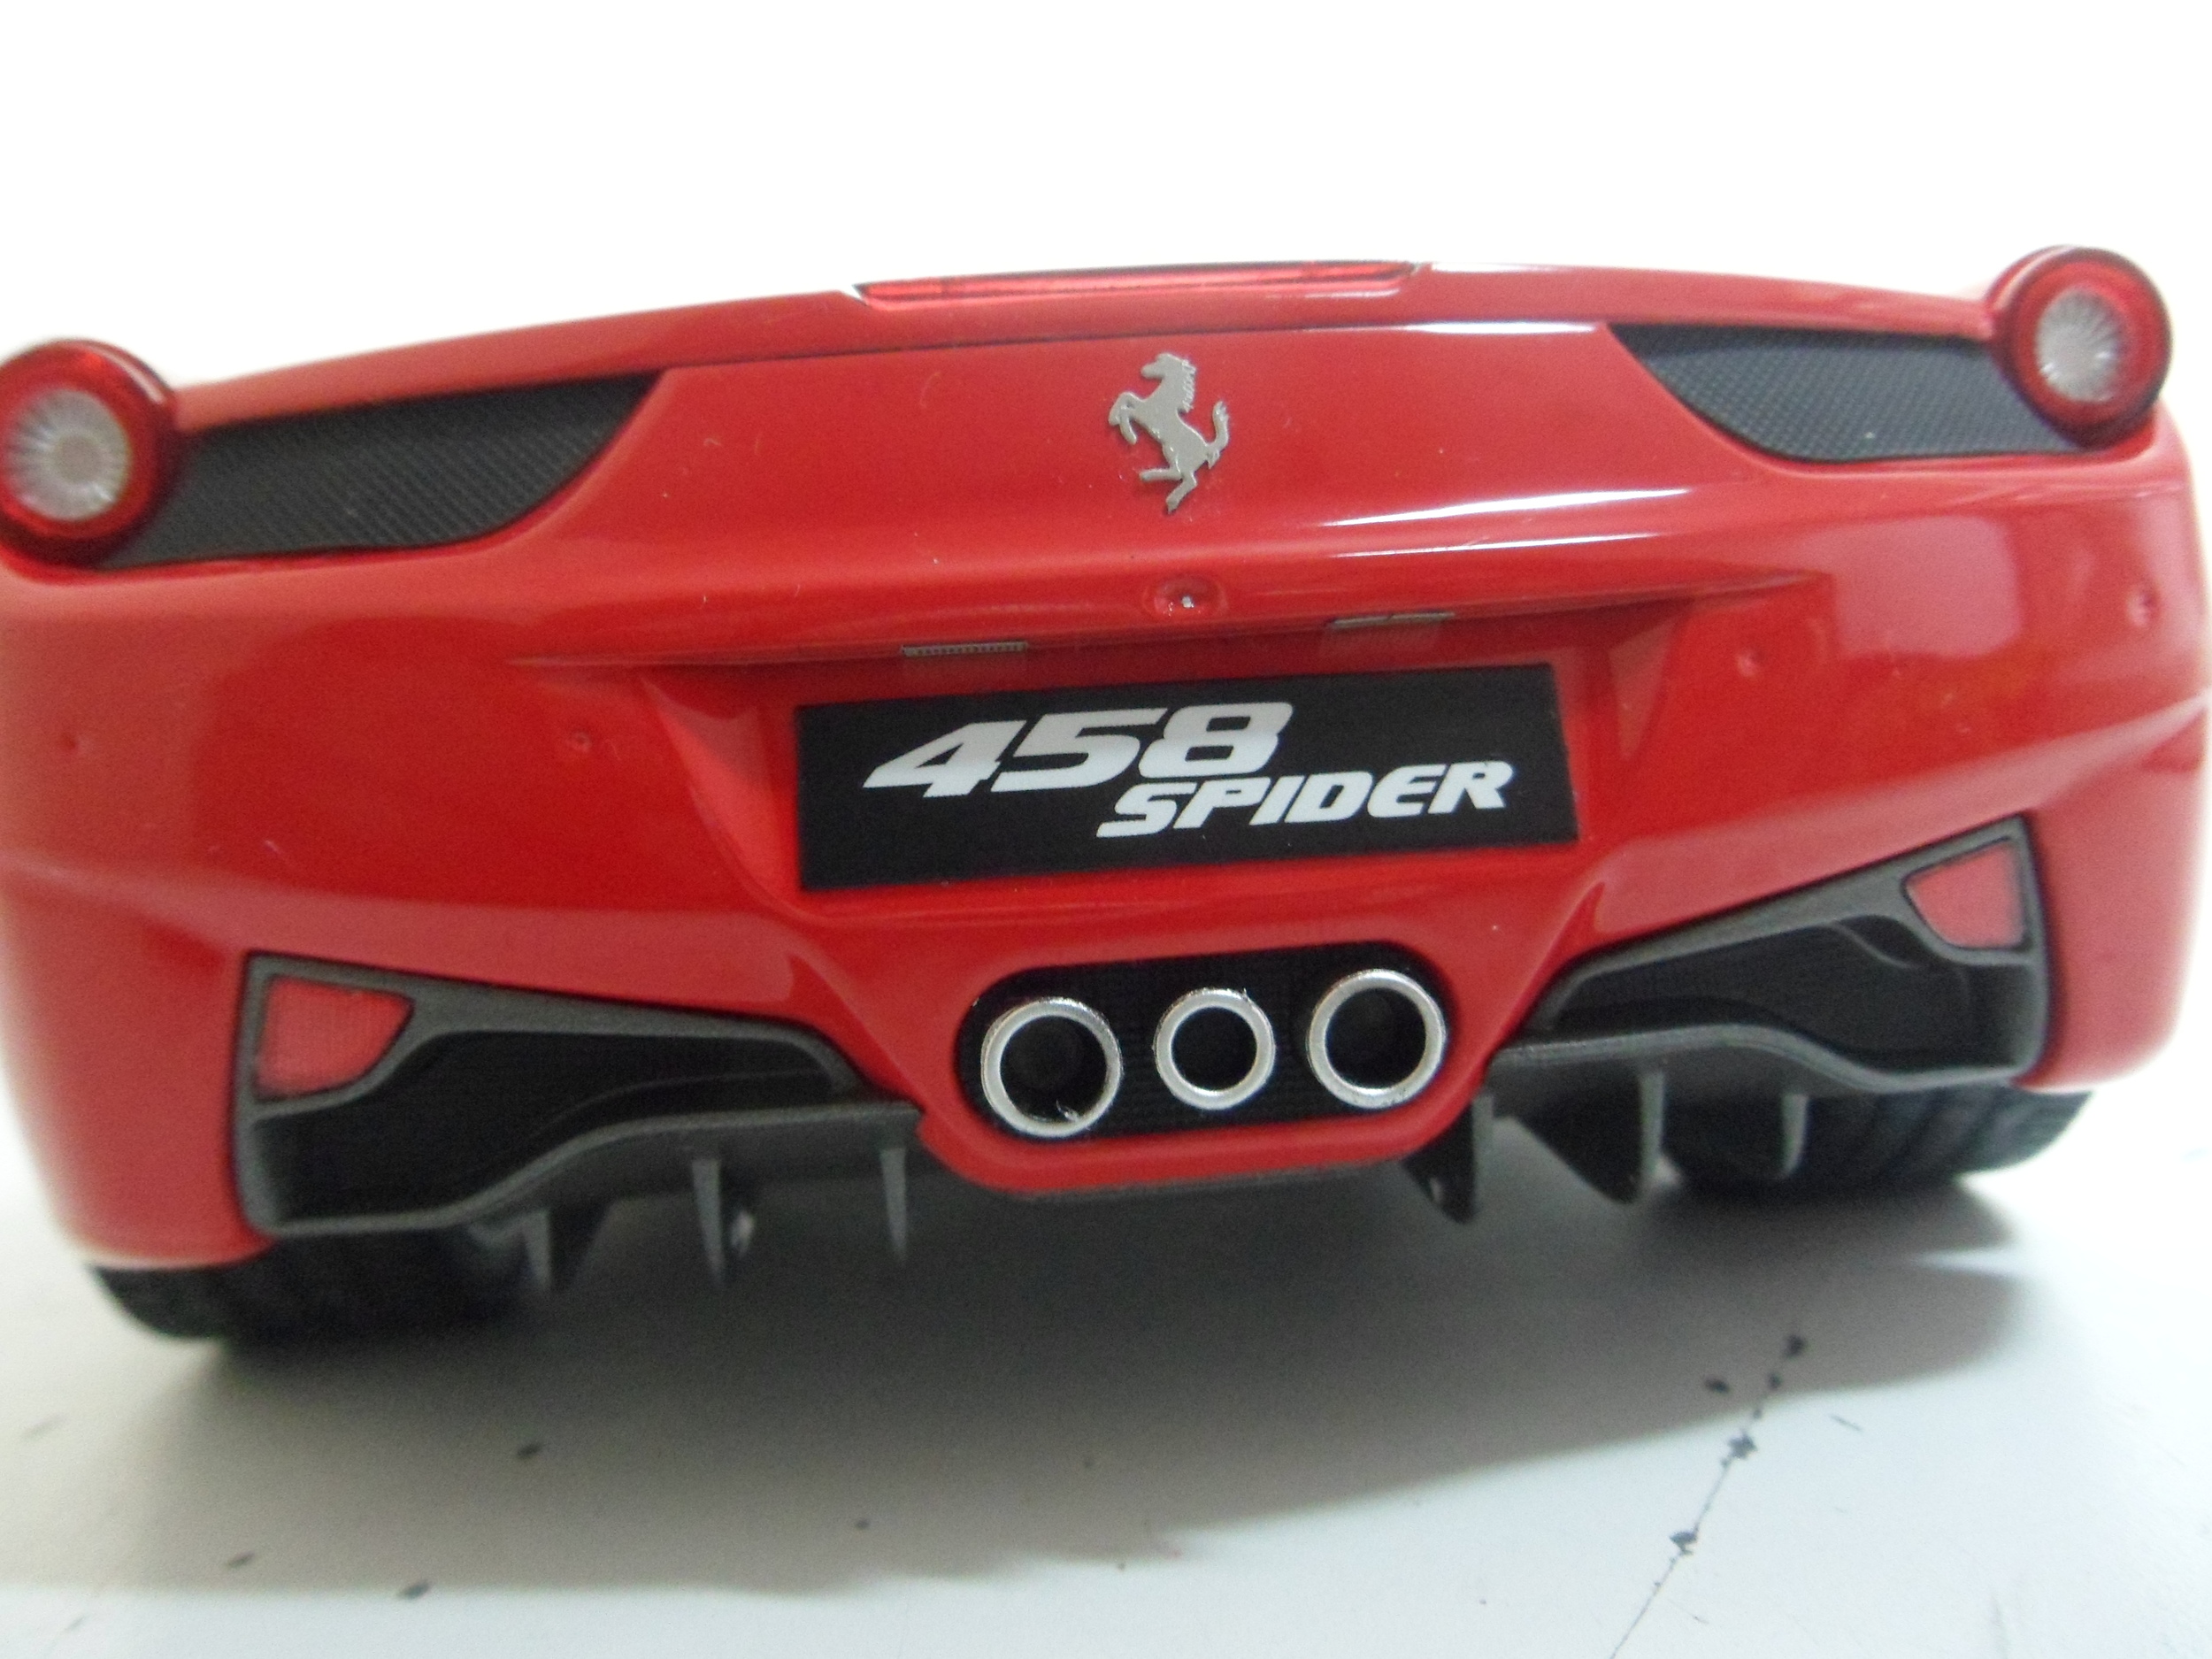 Mattel Defektes Modell Ferrari 458 Speciale Coupe Rot mit Streifen Ab 2013 1/18 Elite Modell Auto